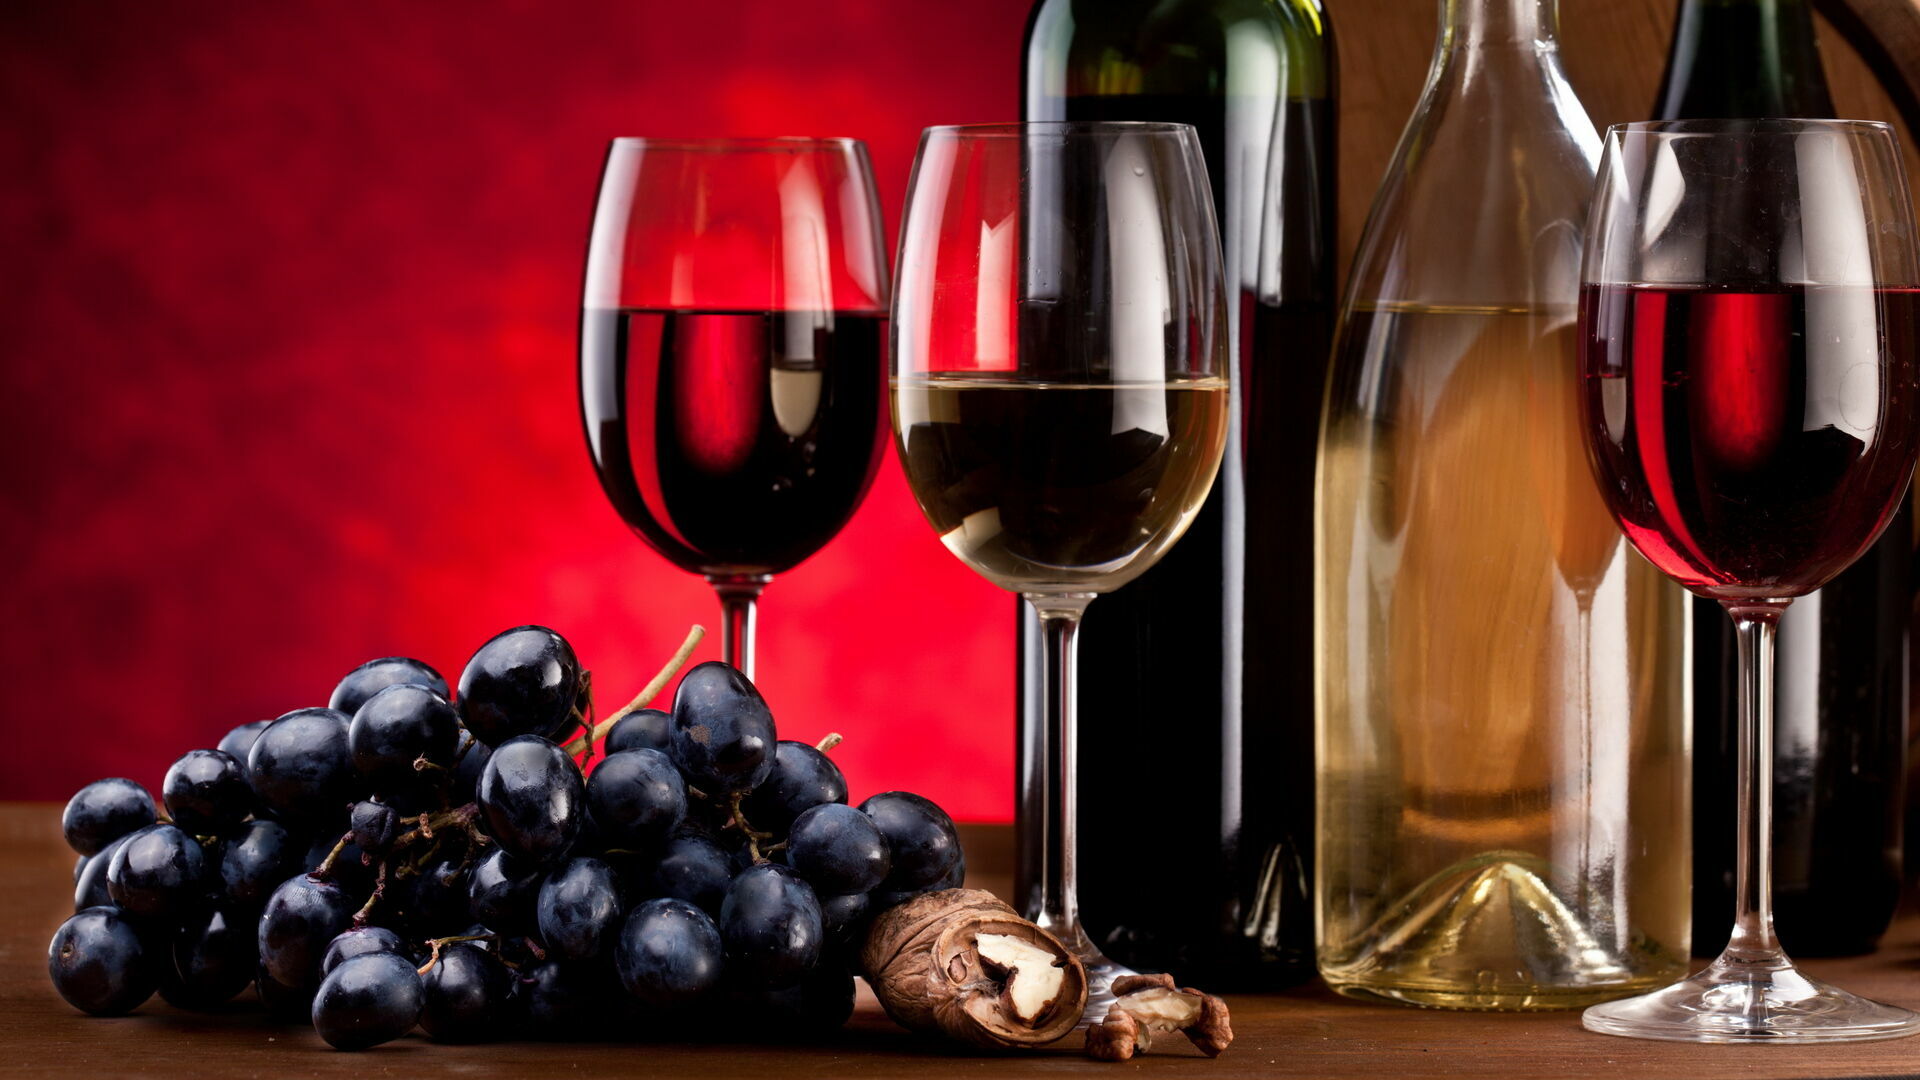 "Роскачество": три четверти марок вин превышает требования ГОСТа